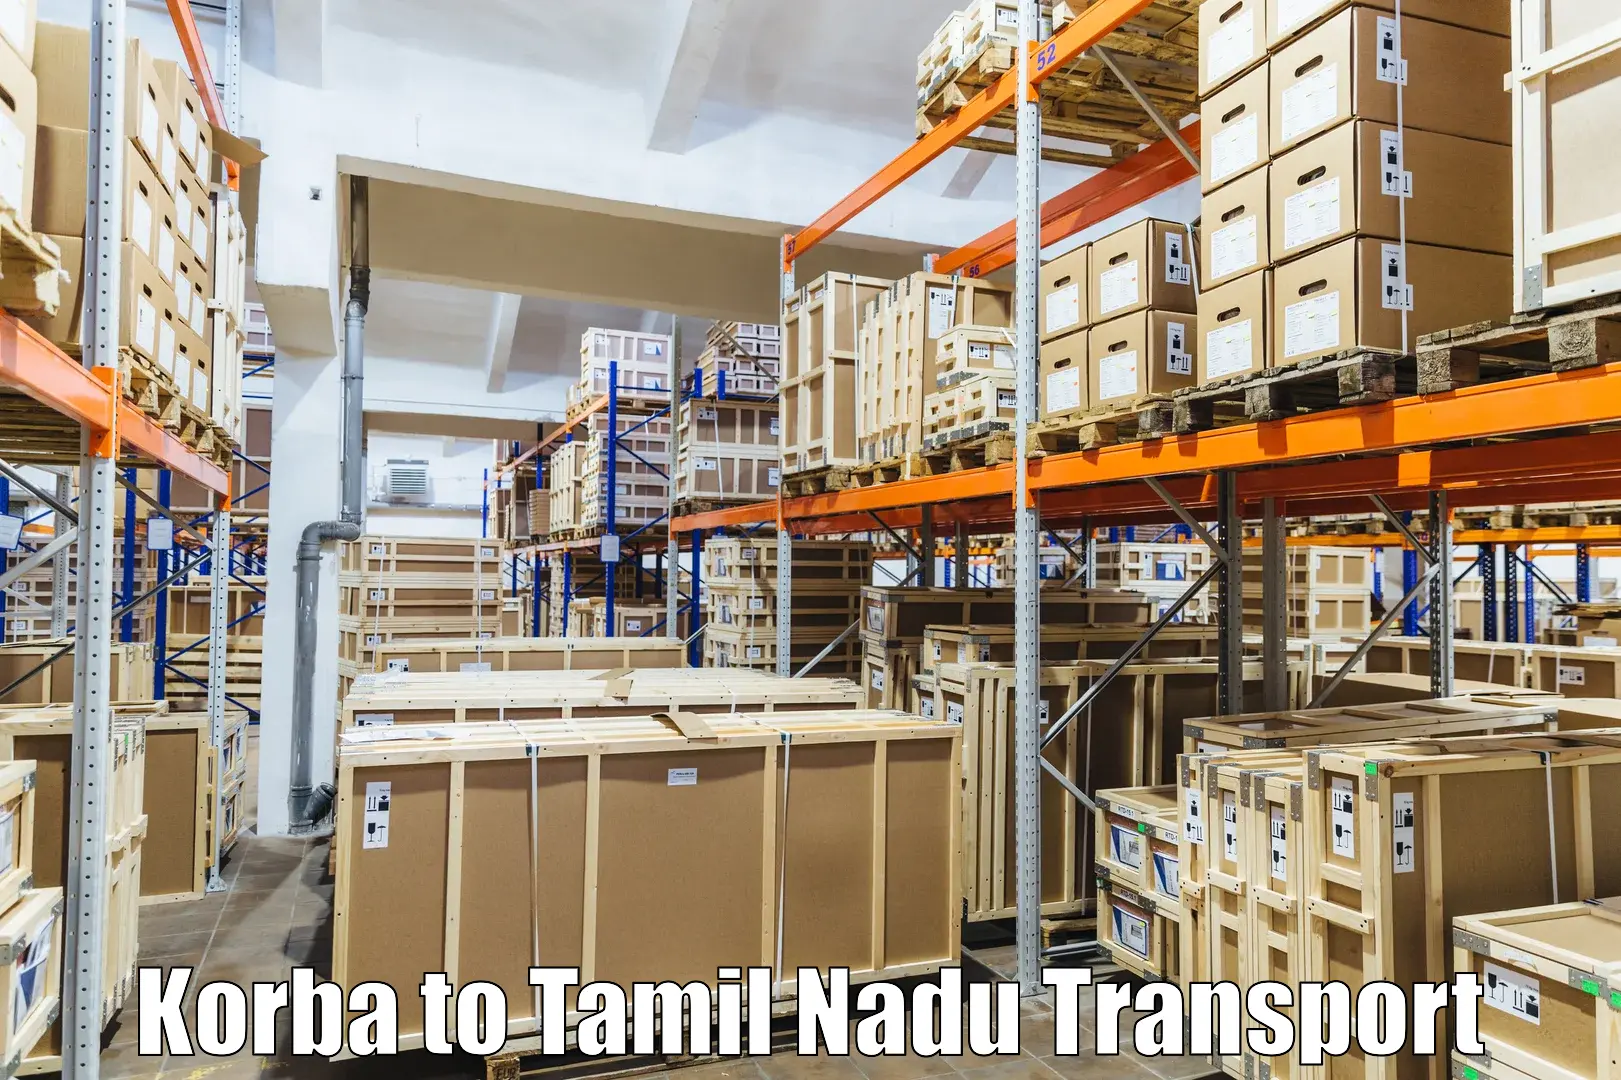 Furniture transport service in Korba to Sriperumbudur